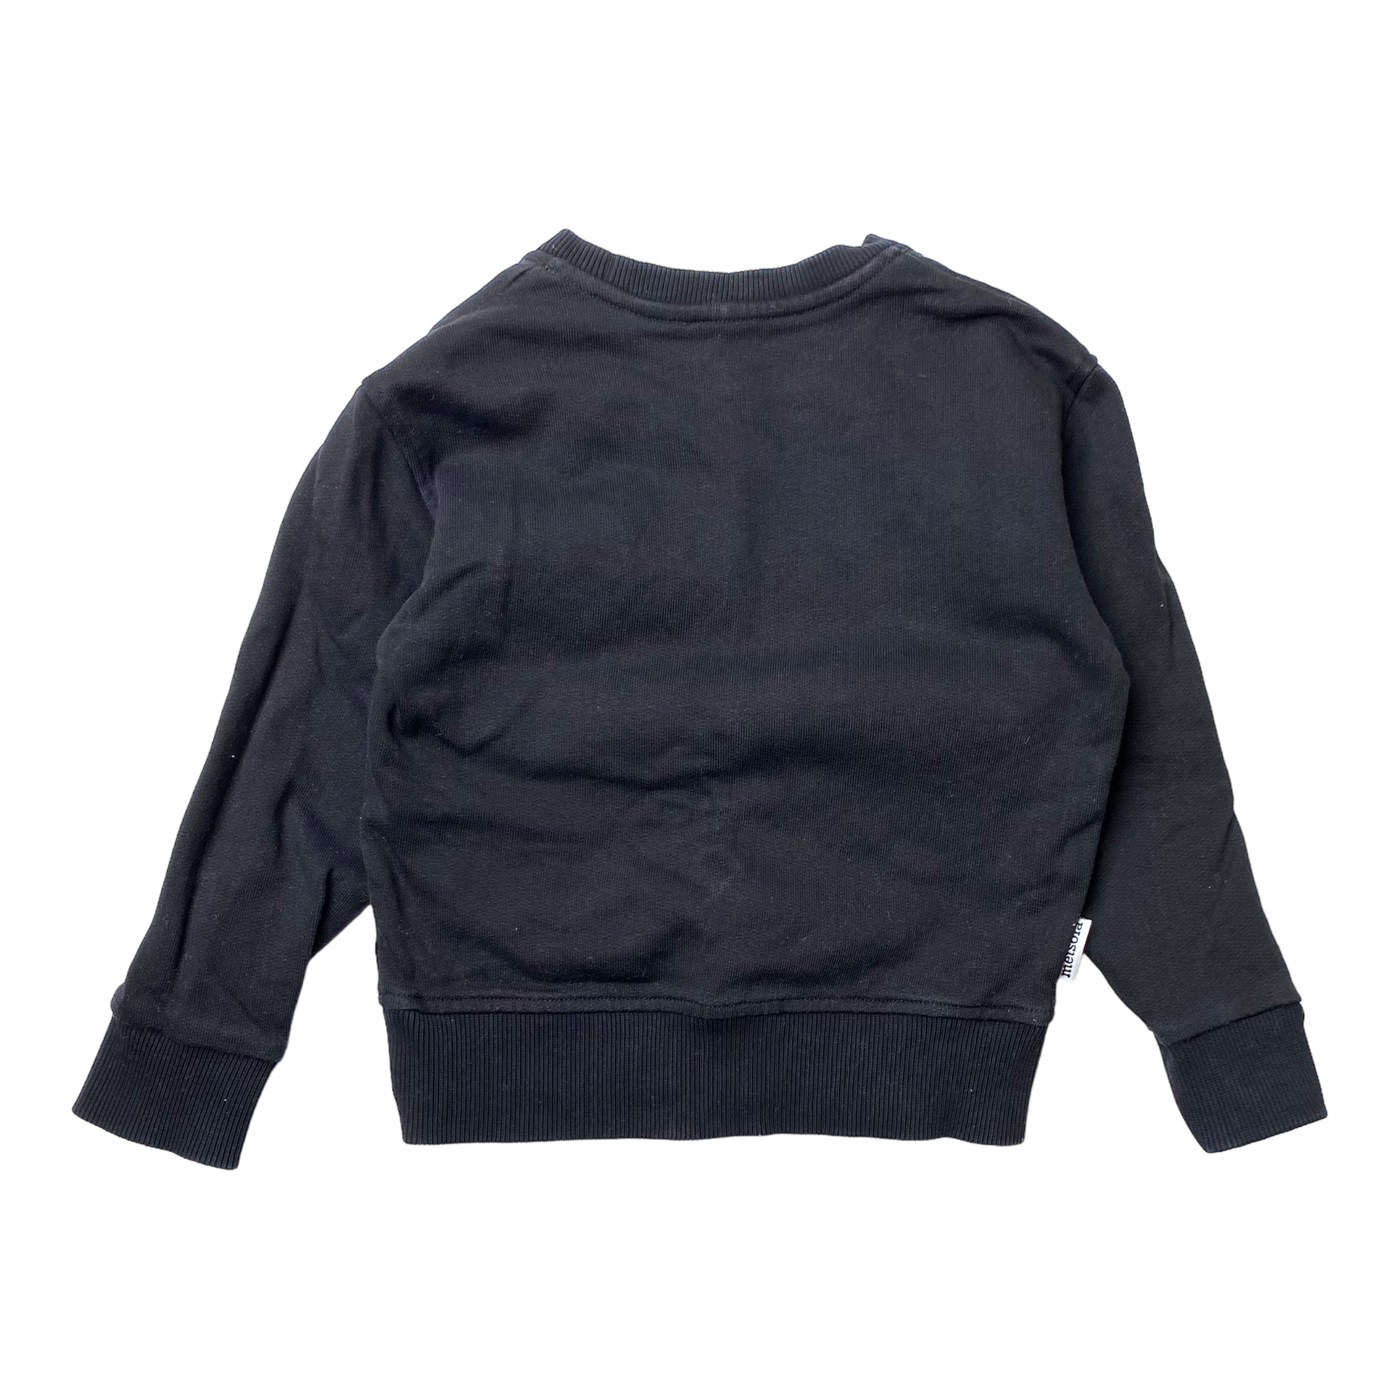 Metsola basic sweatshirt, black | 86/92cm